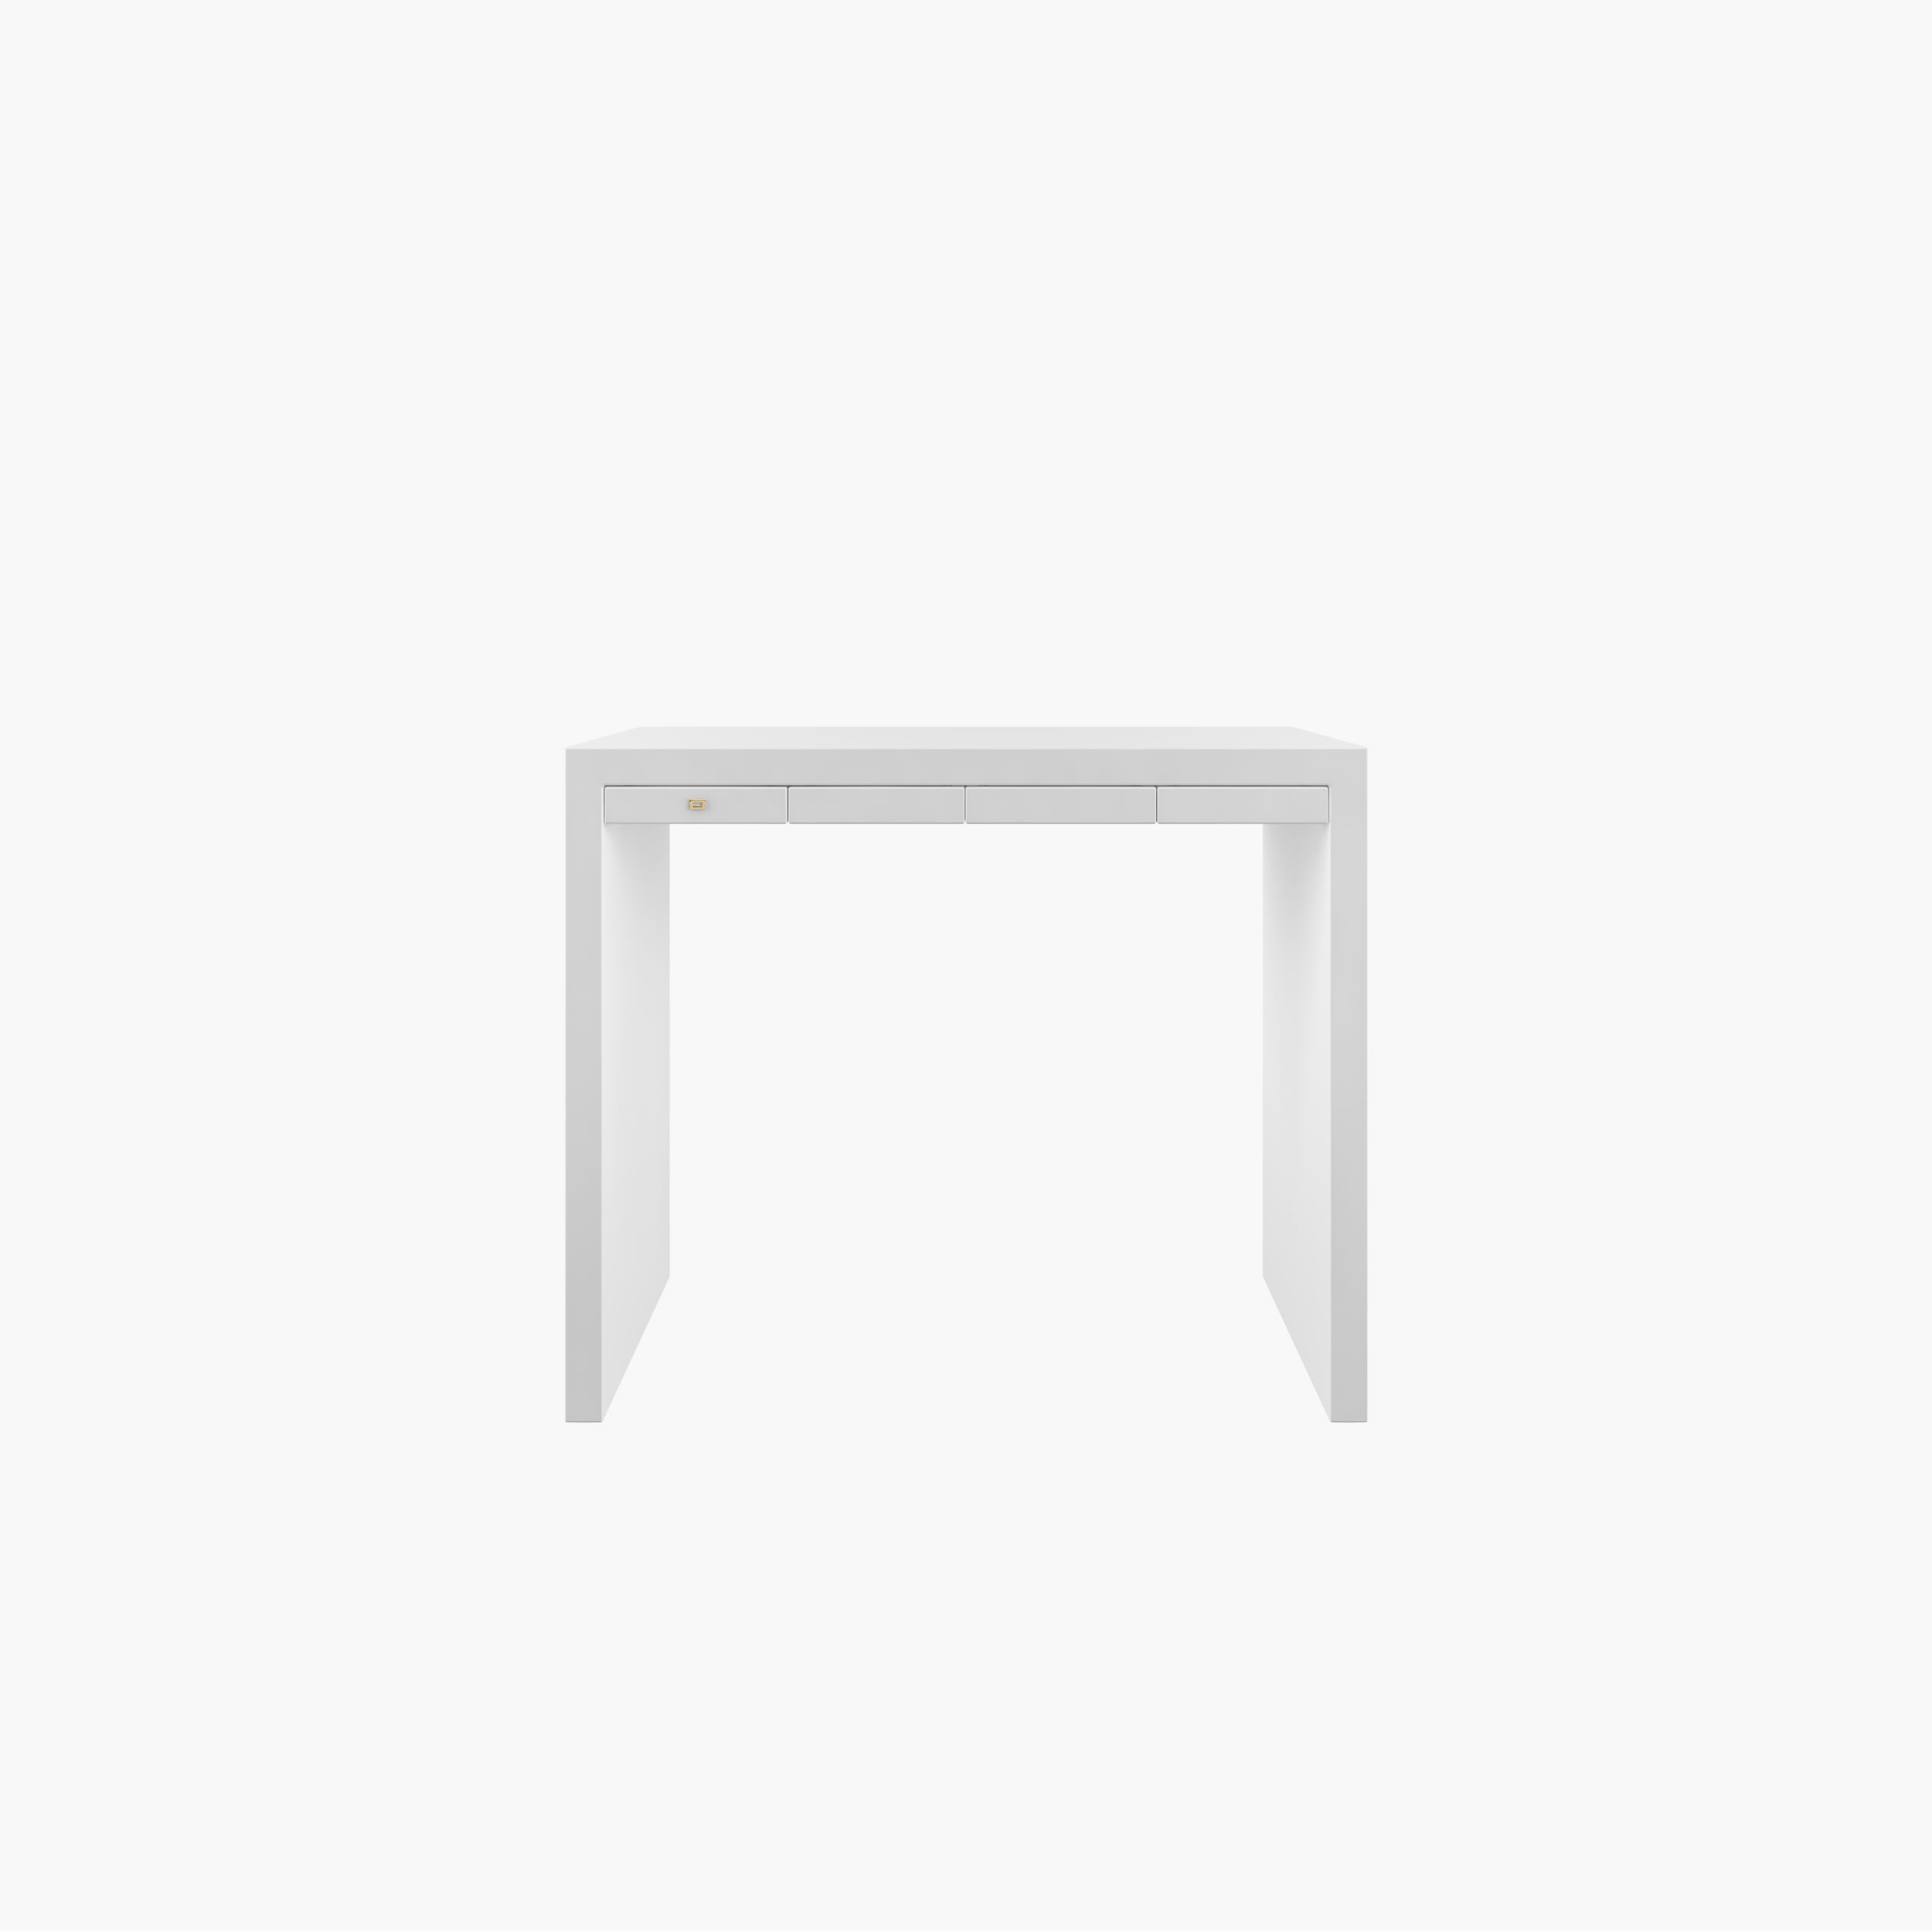 Design-Sideboard-Konsole FS 27